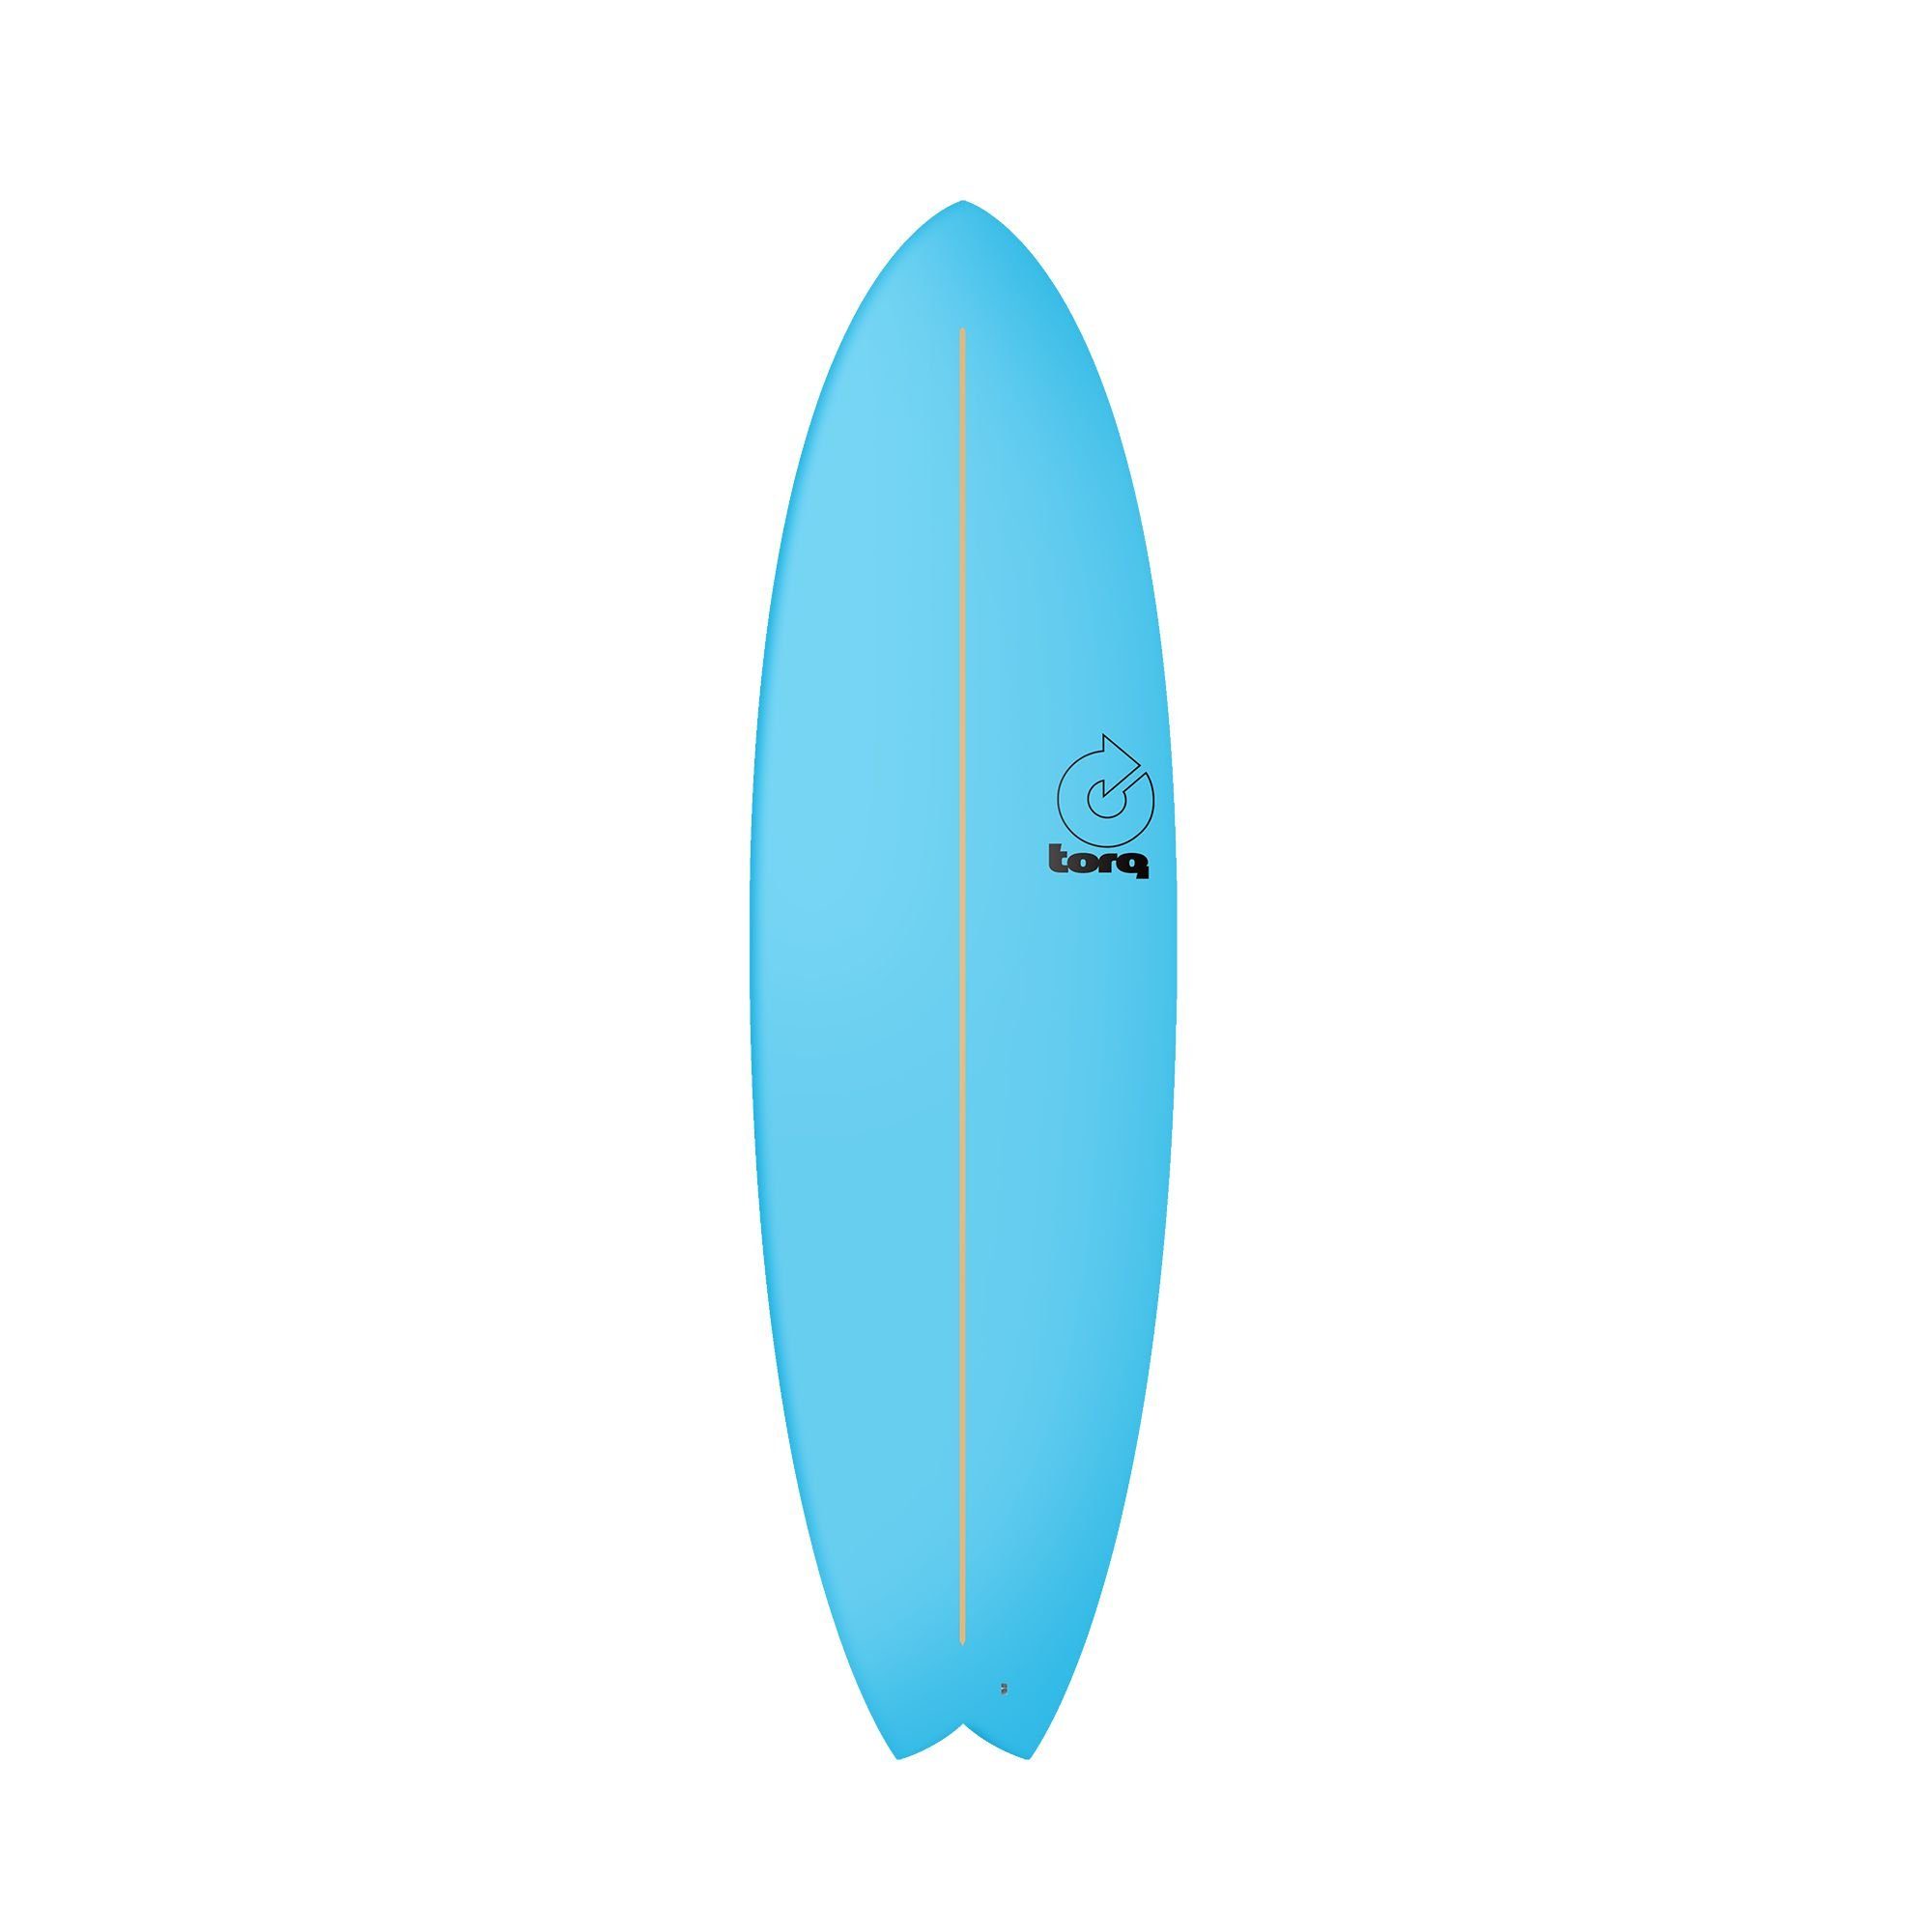 TORQ 6.6 Wellenreiter (Board) Fish, Softboard TORQ Mod Fish Surfboard Blau,